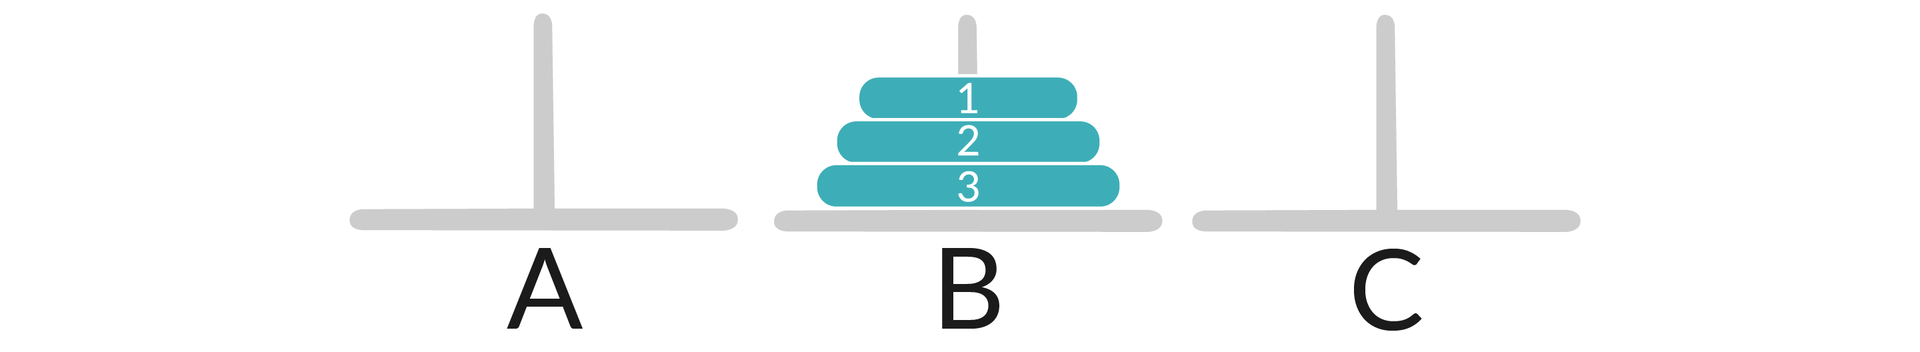 Ilustracja przedstawia trzy pręty oznaczone jako A, B, C. Na środkowym pręcie B są trzy krążki - od dołu do góry od największego do najmniejszego, są ponumerowane 3, 2, 1.  